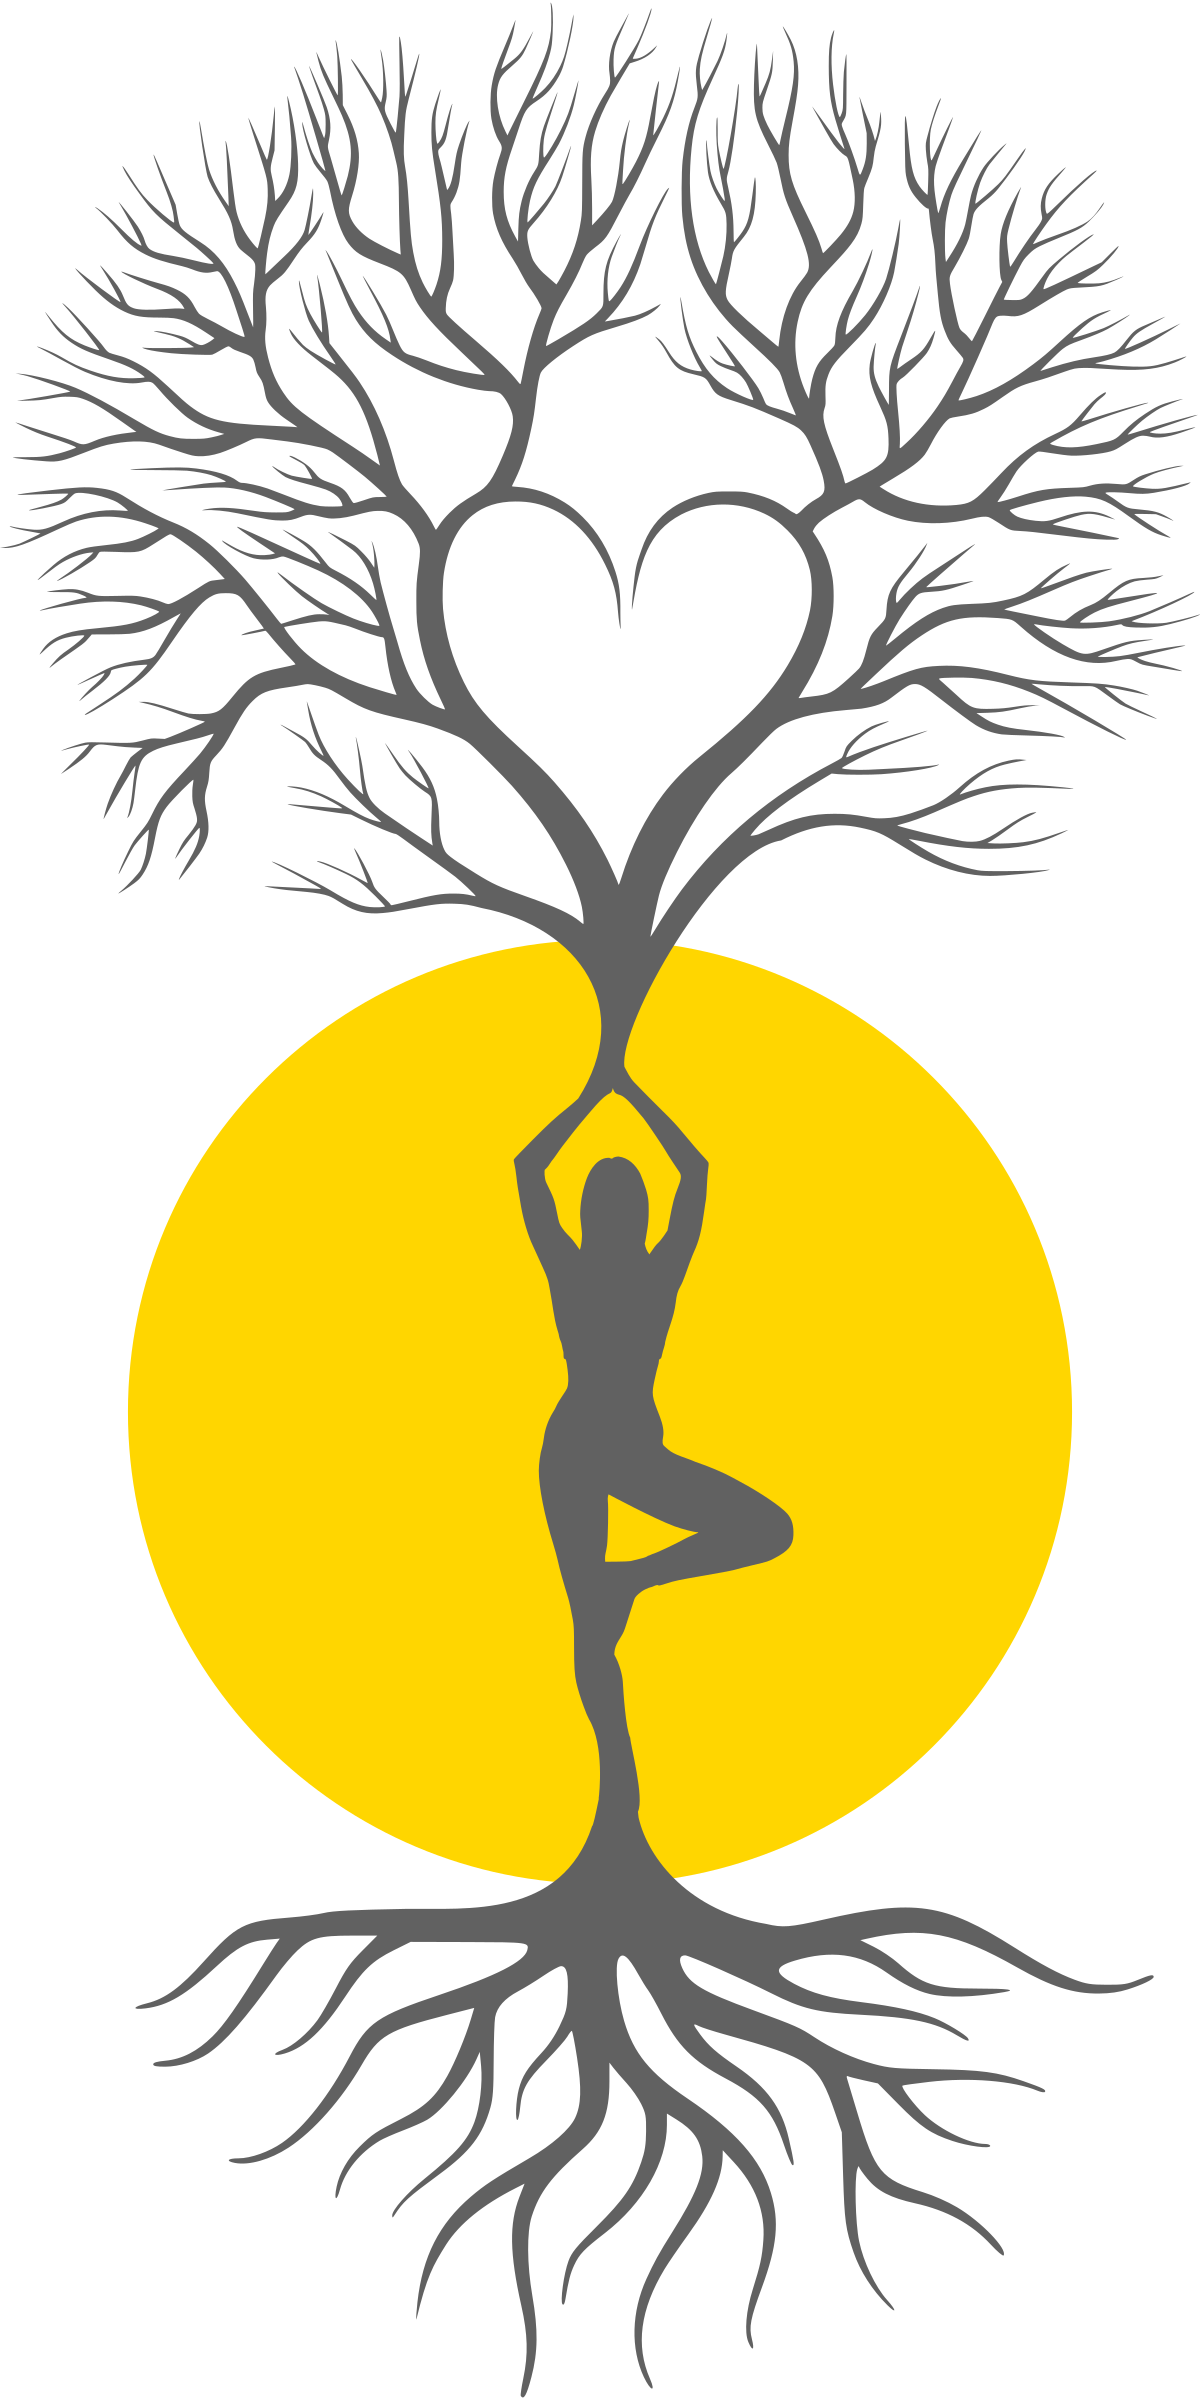 Tree yoga Royalty Free Vector Image - VectorStock